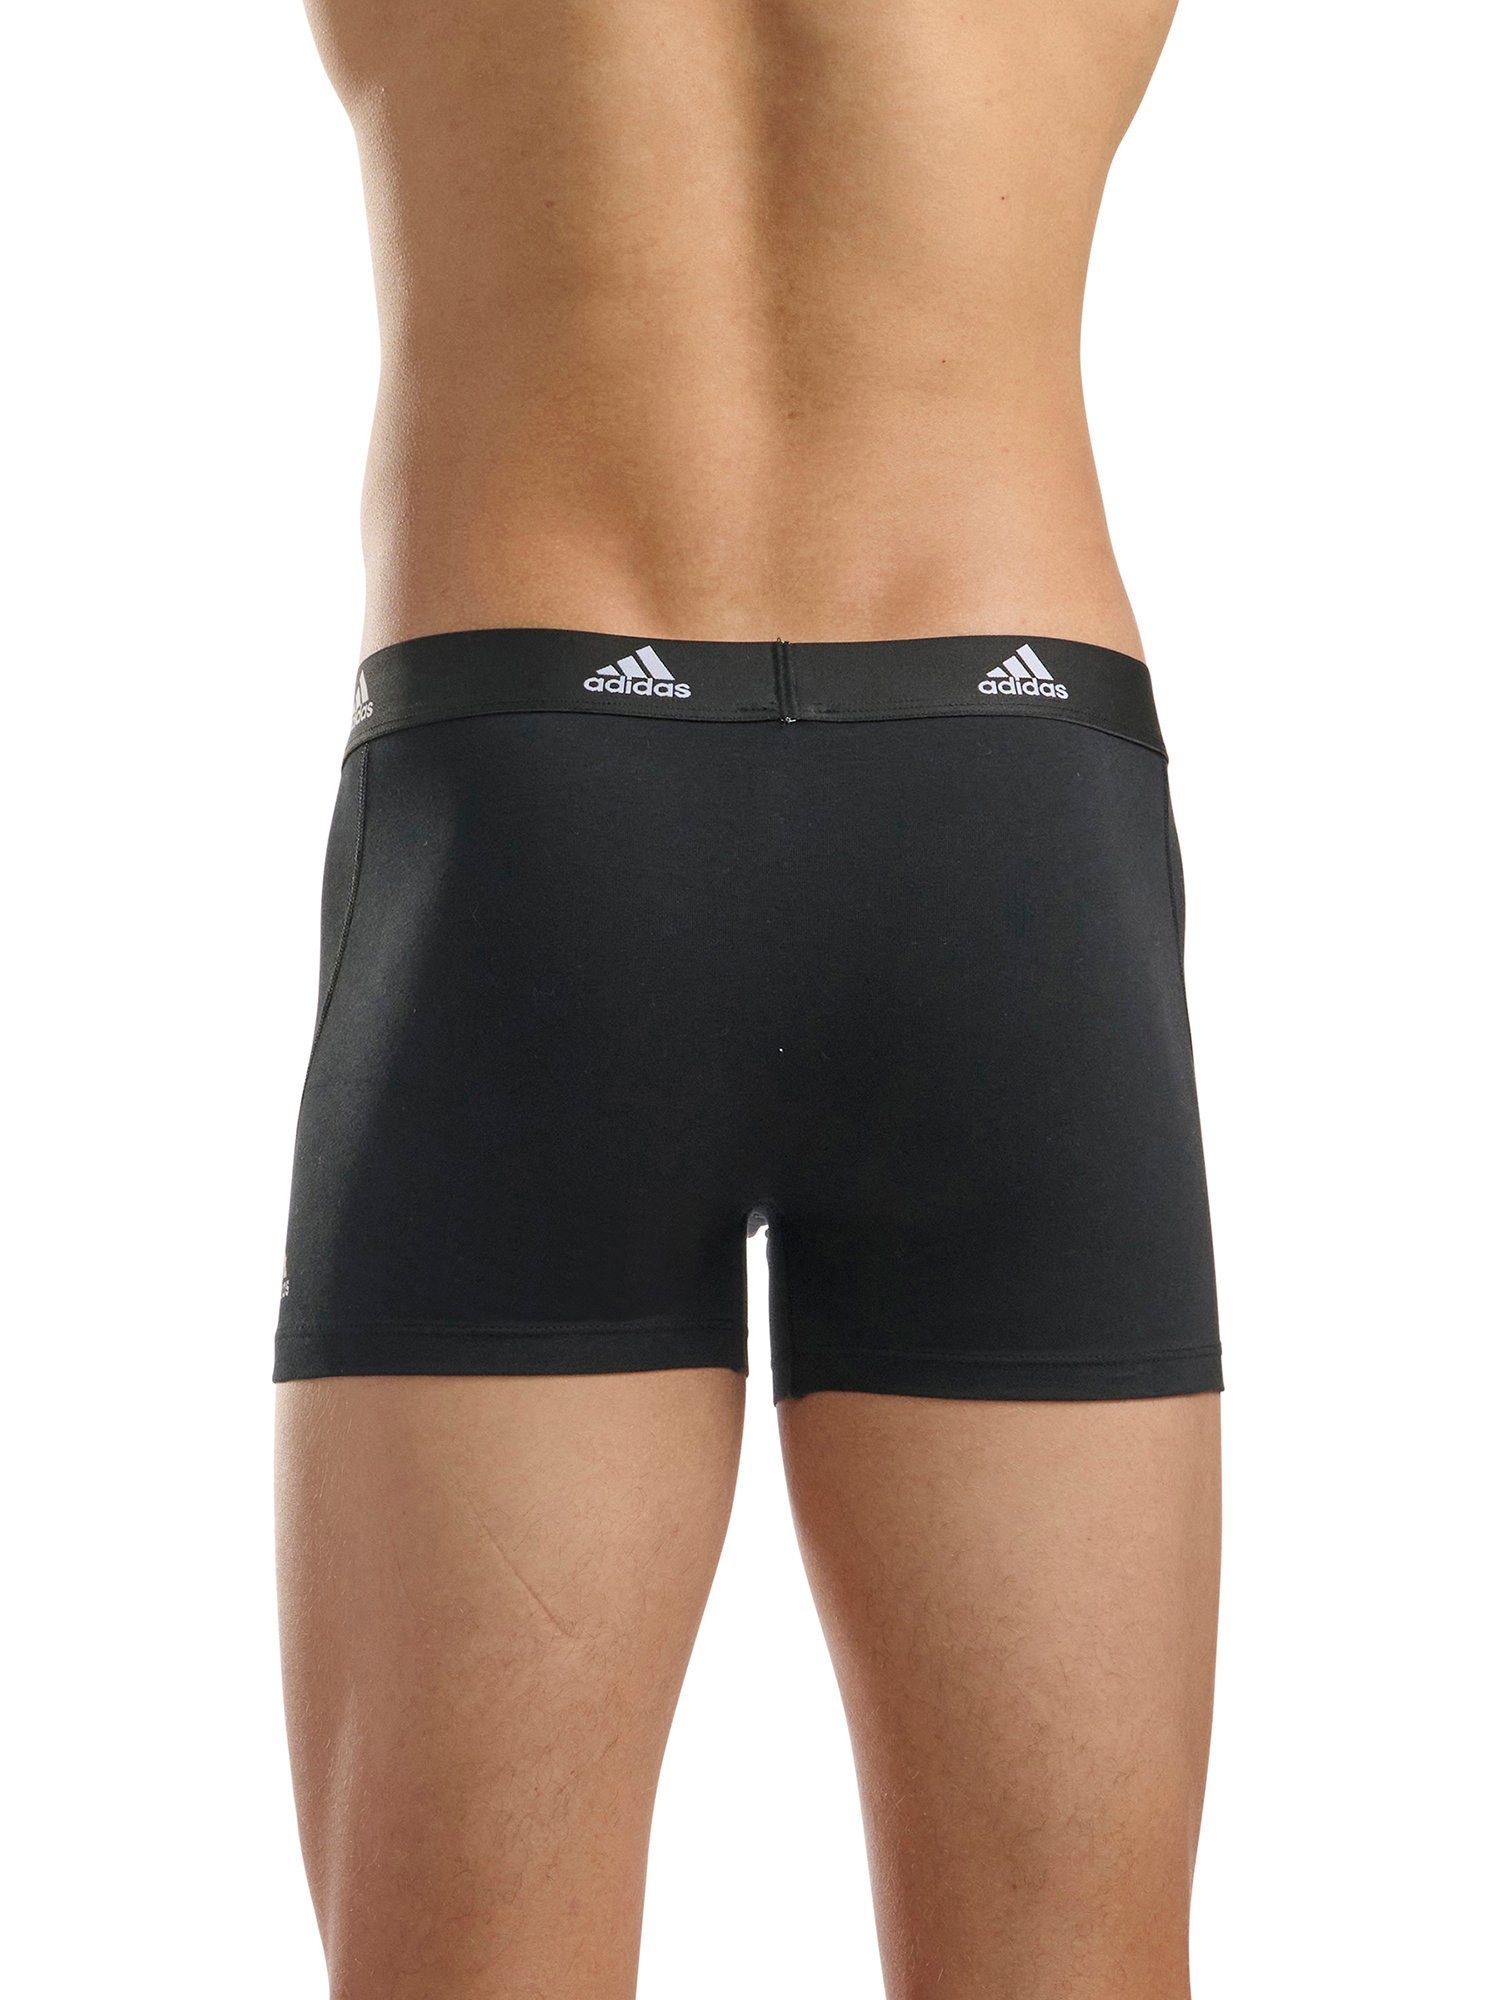 adidas Sportswear BASIC herren männer grün-schwarz (3-St) Trunk unterhose